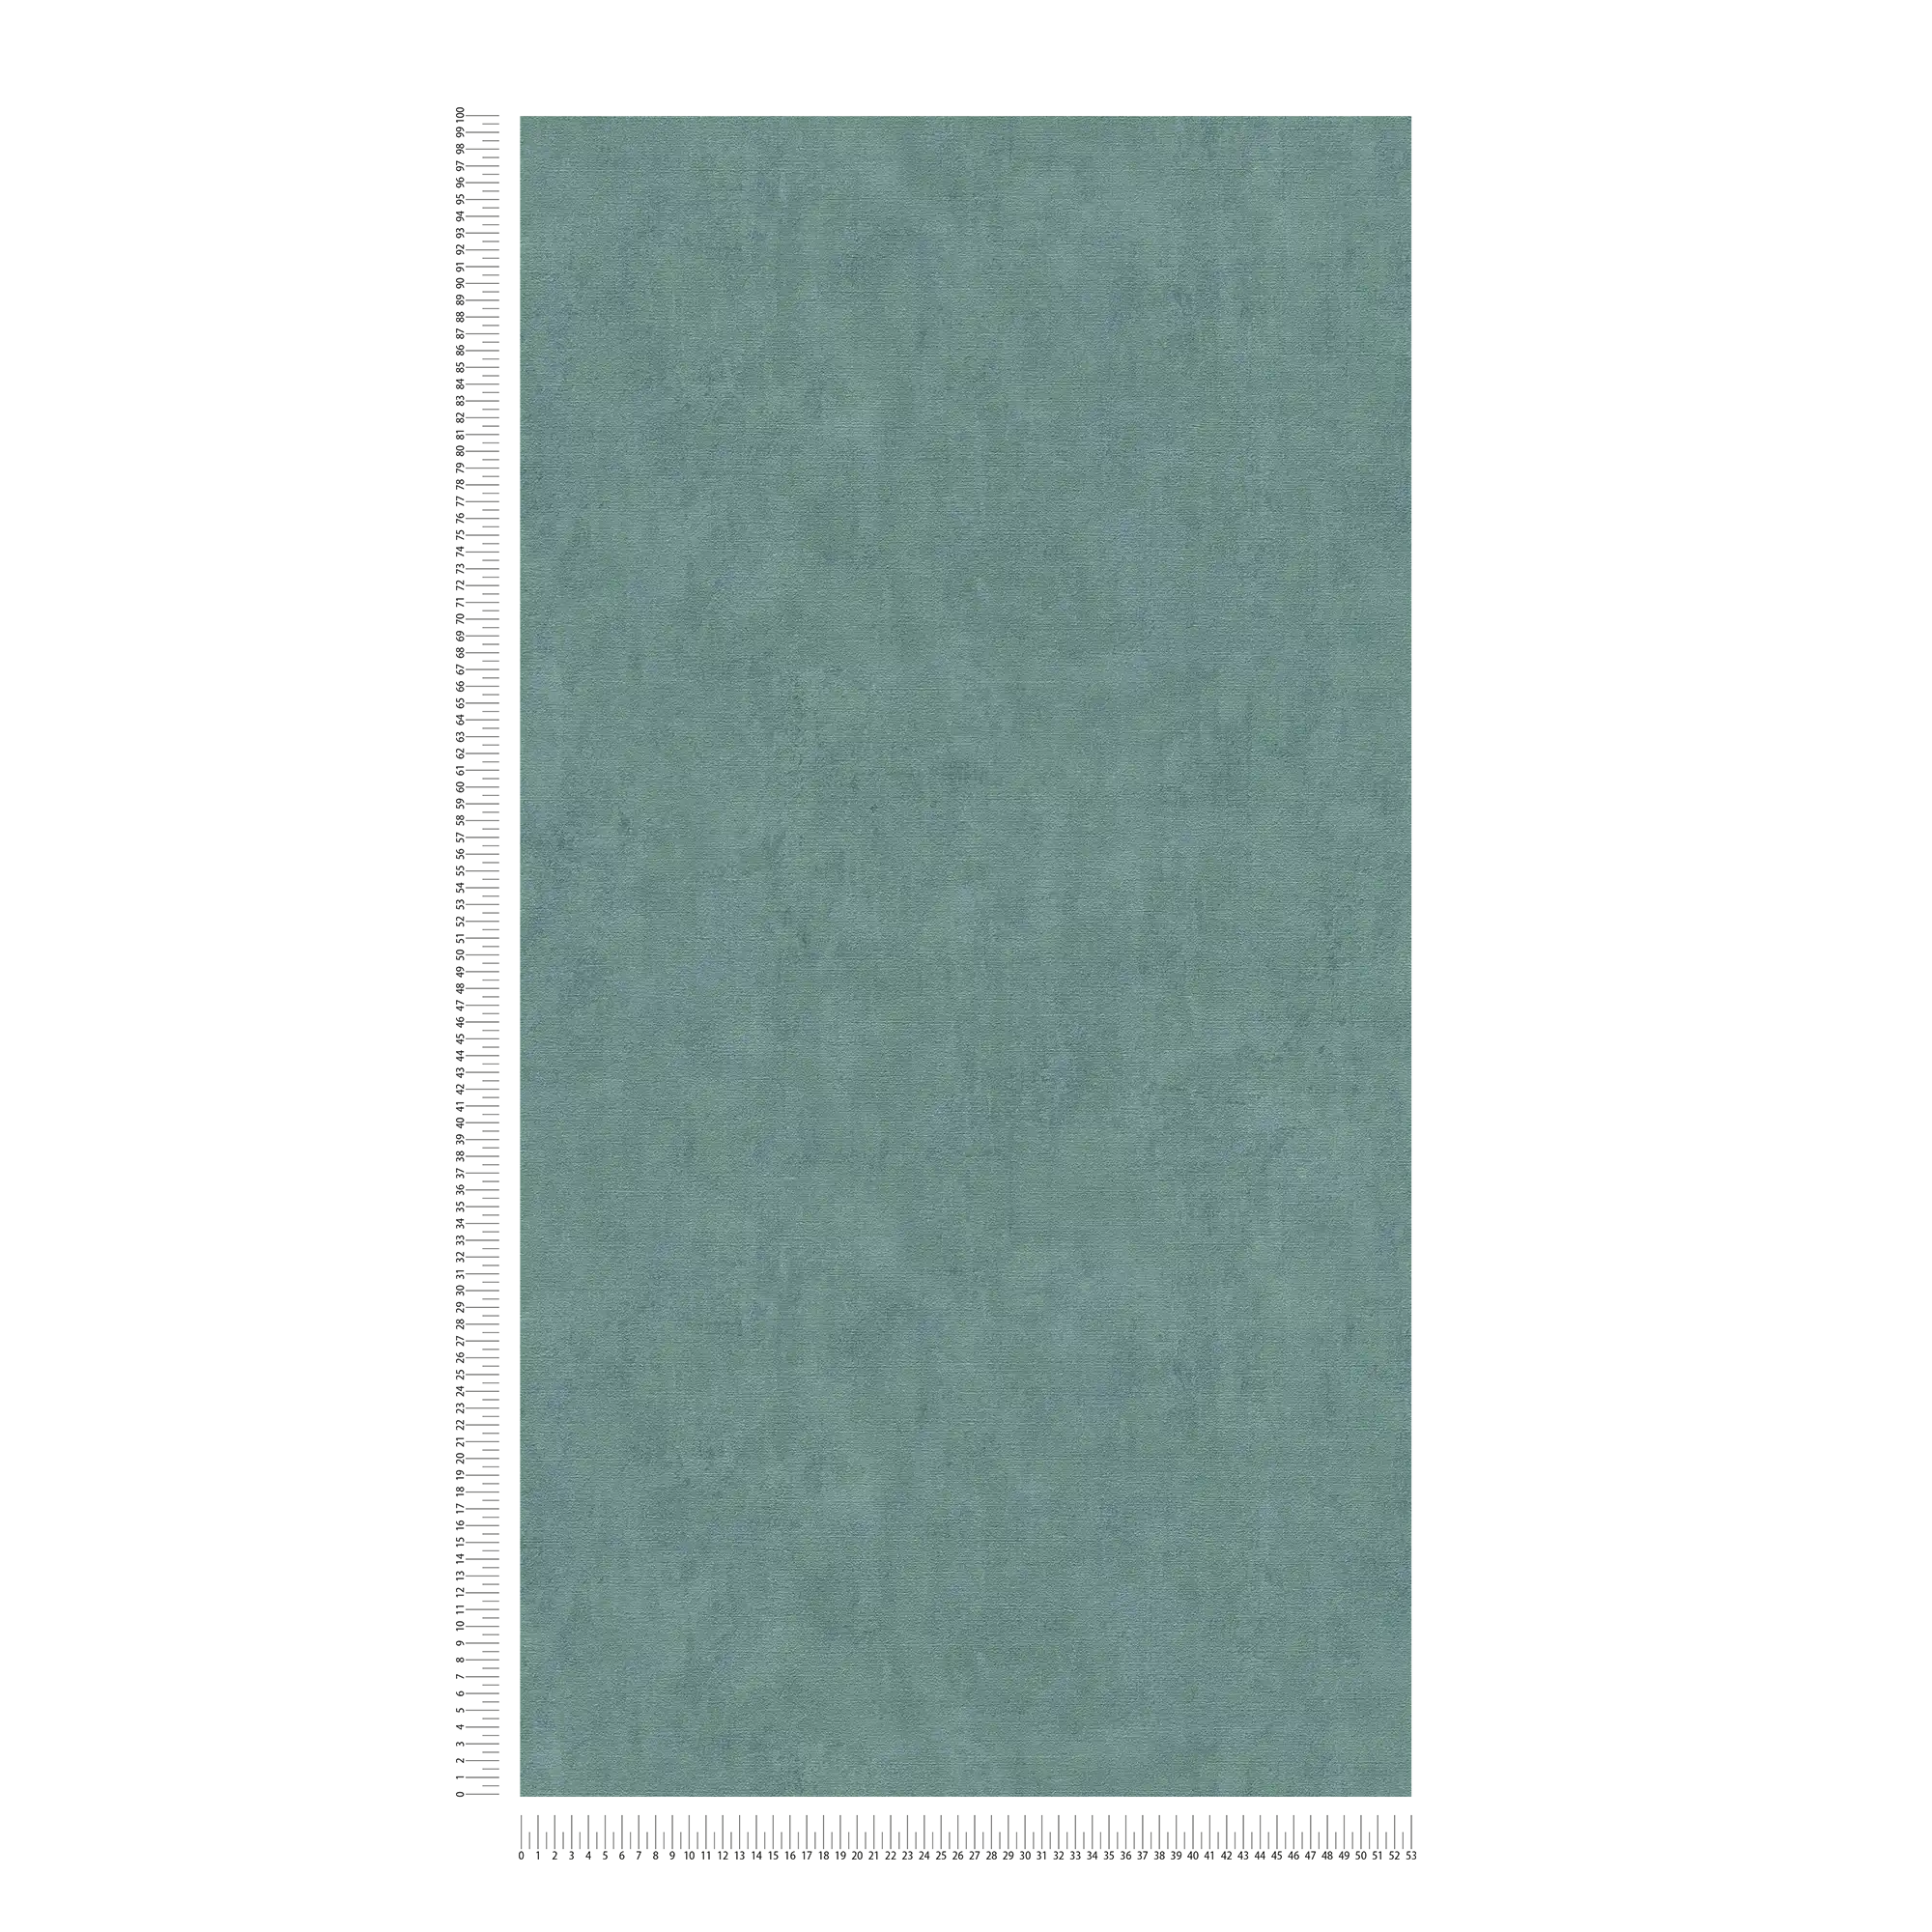             Papier peint uni pétrole chiné accents verts - bleu, vert
        